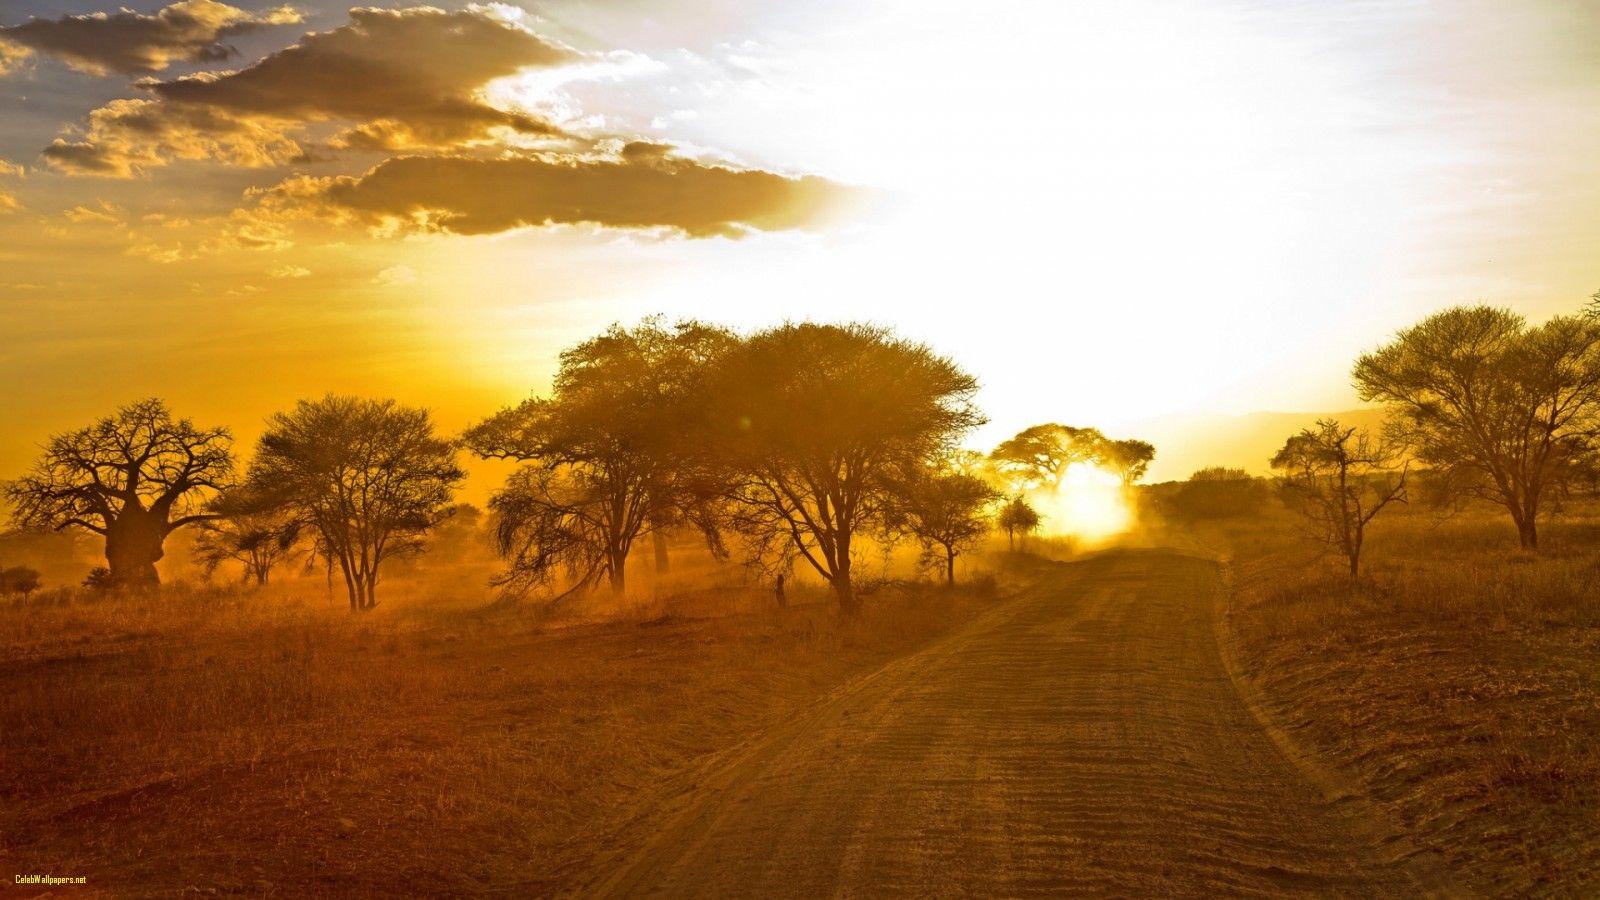 Africa Wallpaper Africa Sunset HD Wallpaper Desktop Image Free